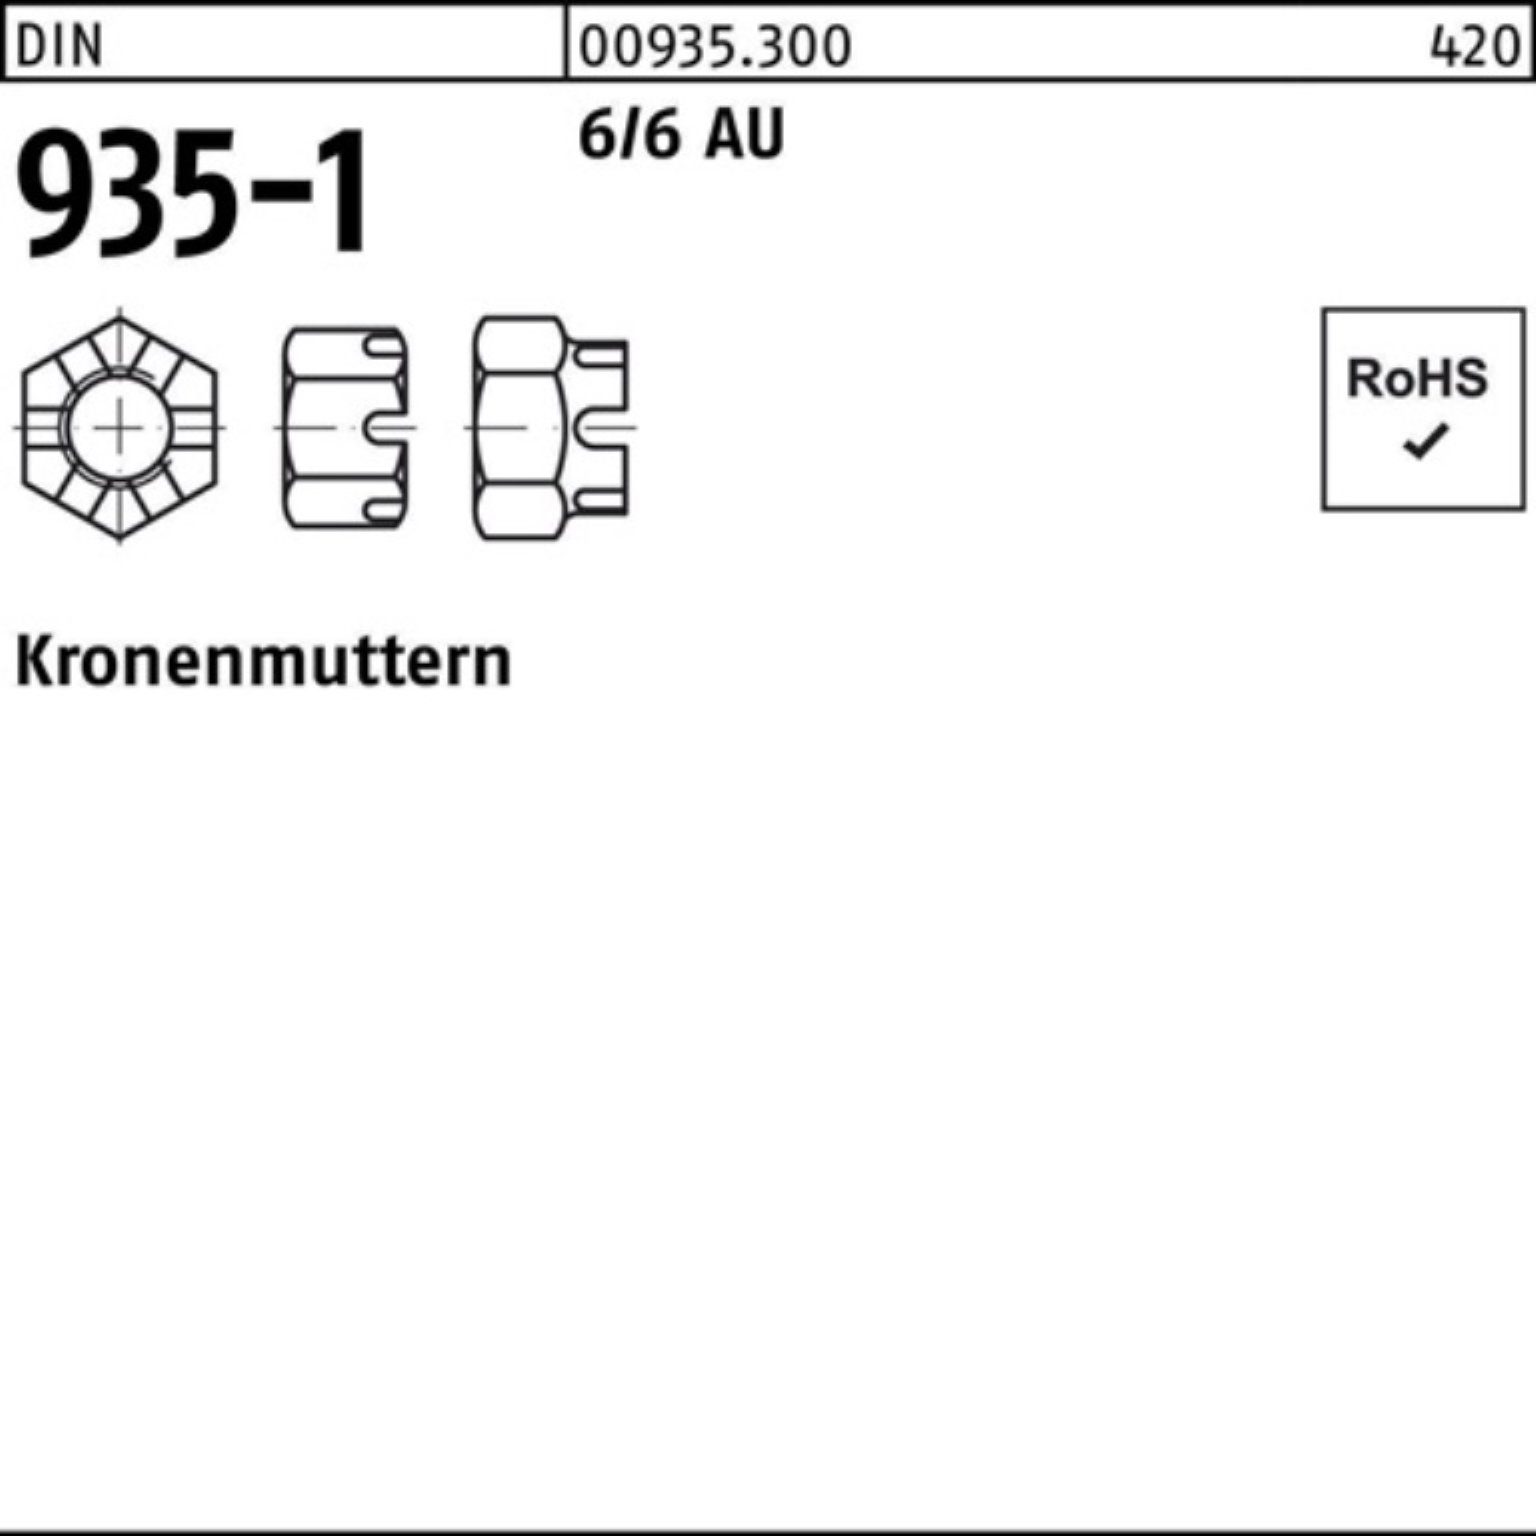 DIN M48 Kronenmutter Pack Stück Reyher DIN 6/6 1 Automatenstahl Kronenmutter 100er 935-1